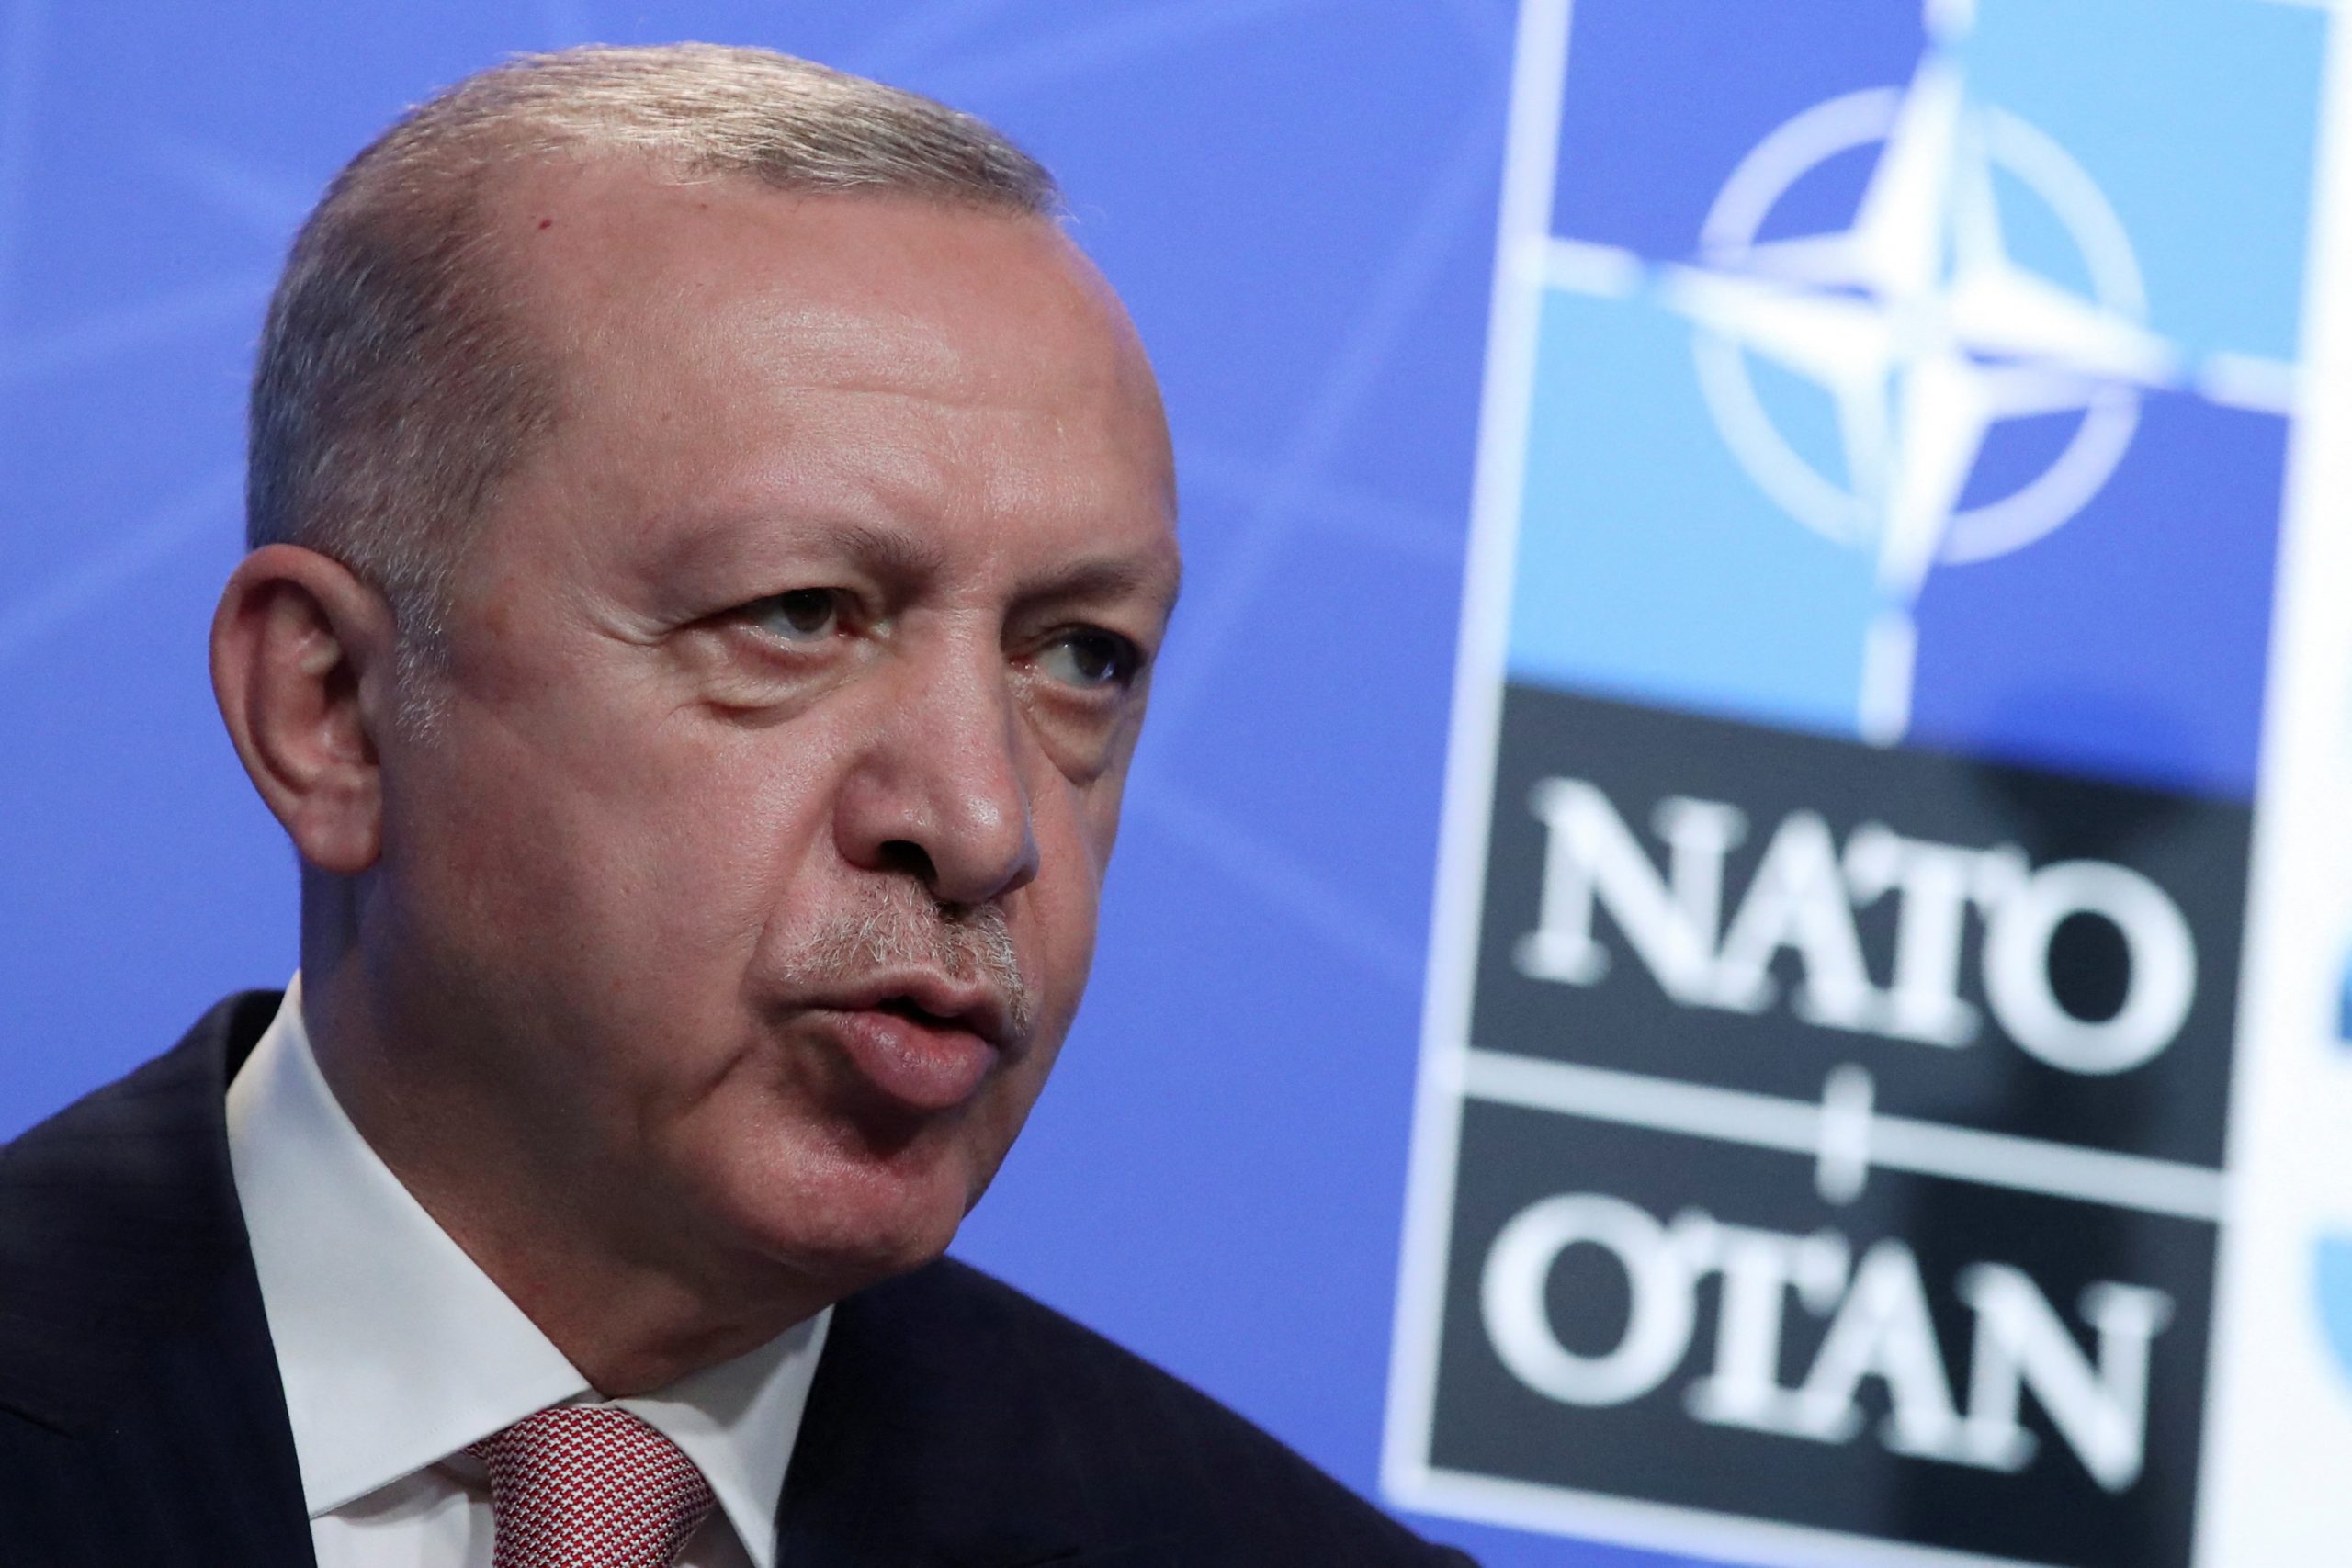 Greece has no real value in NATO: Erdogan 16